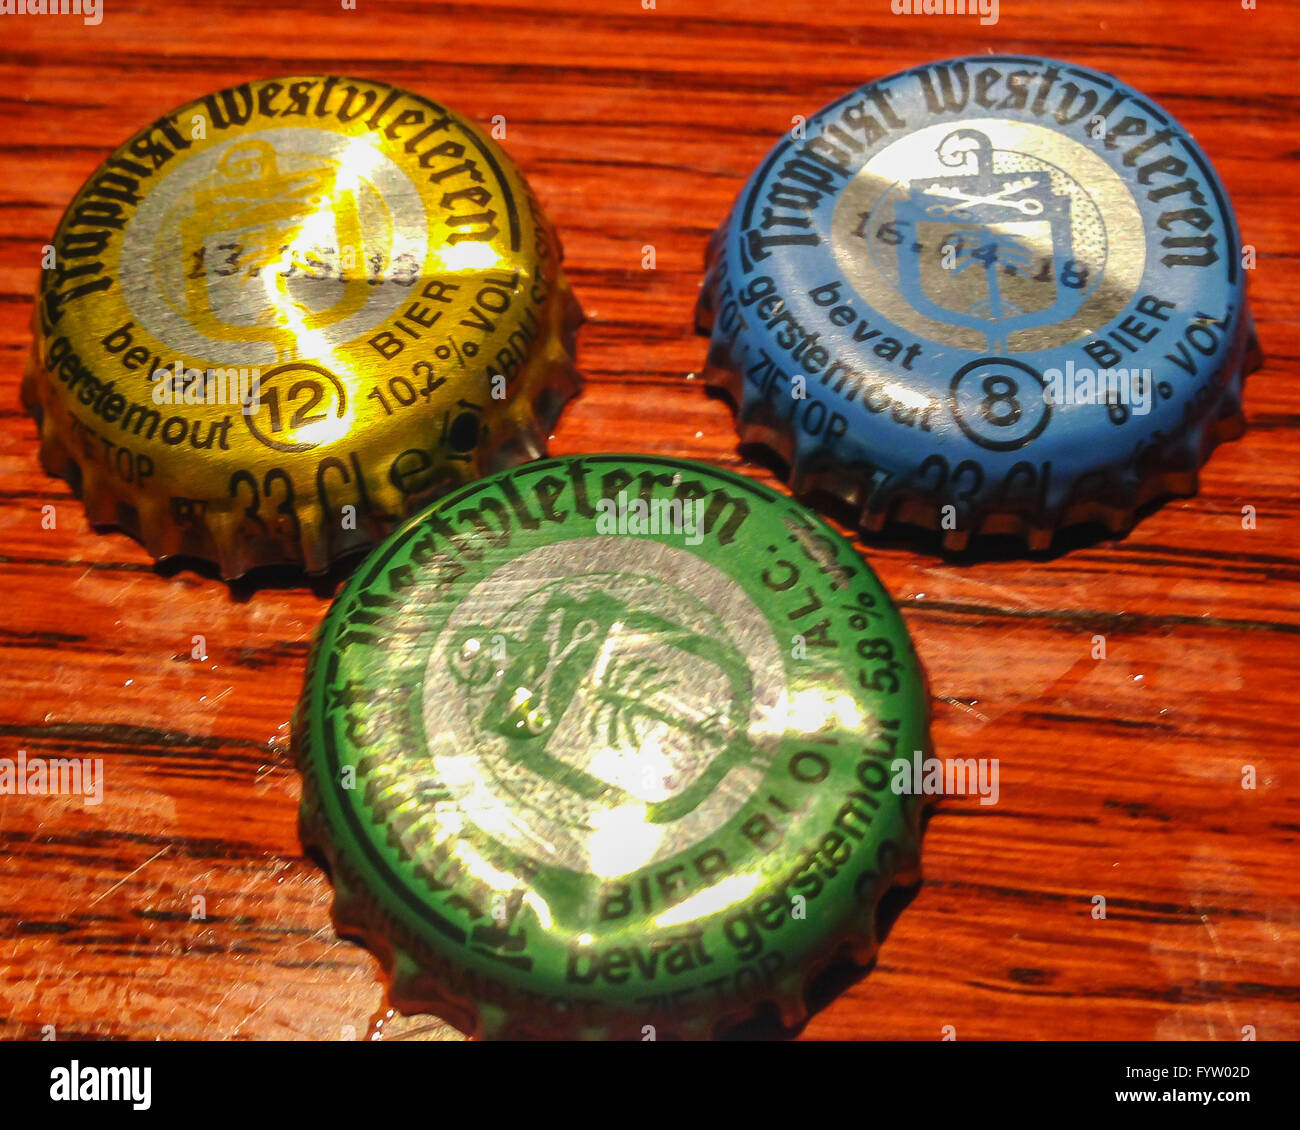 Belgique - des bouchons de bière de Trappiste Westvleteren bières au pub. Banque D'Images